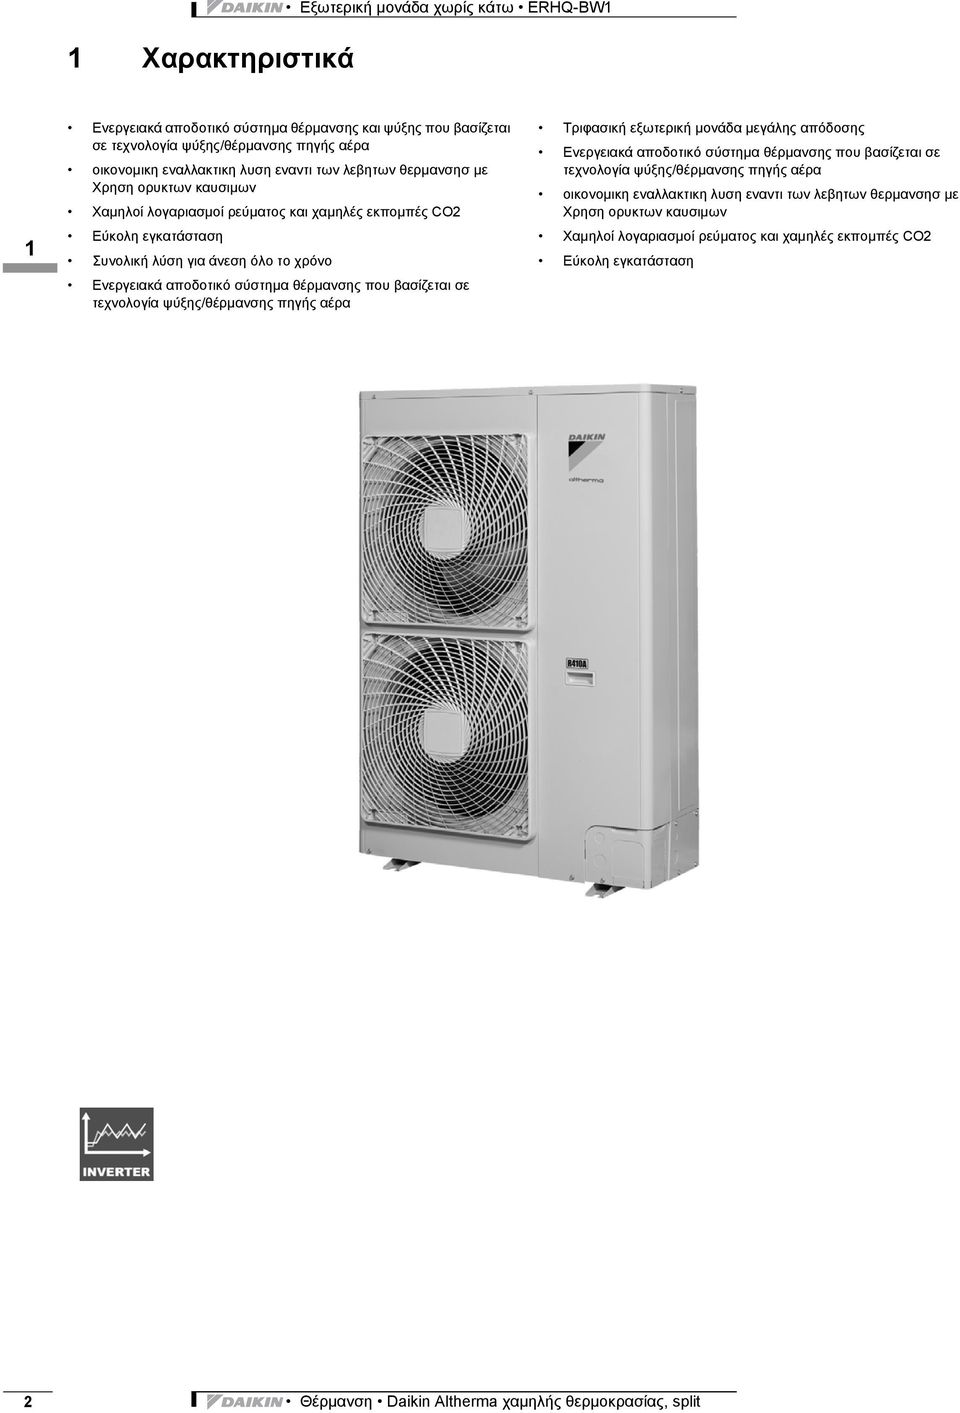 Ενεργειακά αποδοτικό σύστημα θέρμανσης που βασίζεται σε τεχνολογία ψύξης/θέρμανσης πηγής αέρα Τριφασική εξωτερική μονάδα μεγάλης απόδοσης Ενεργειακά αποδοτικό σύστημα θέρμανσης που βασίζεται σε